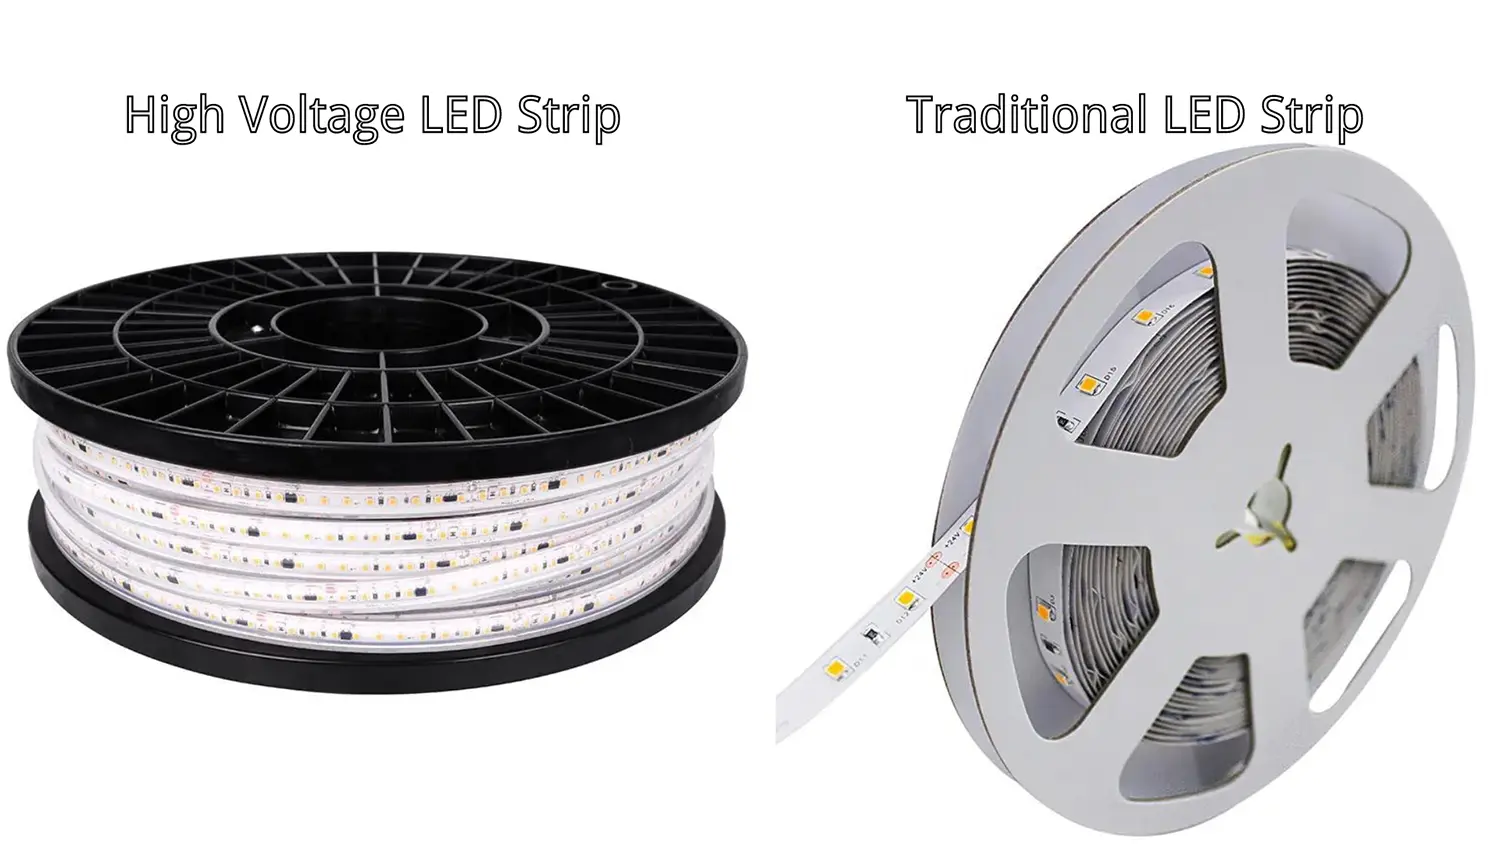 Fita LED de alta tensão versus Fita LED tradicional